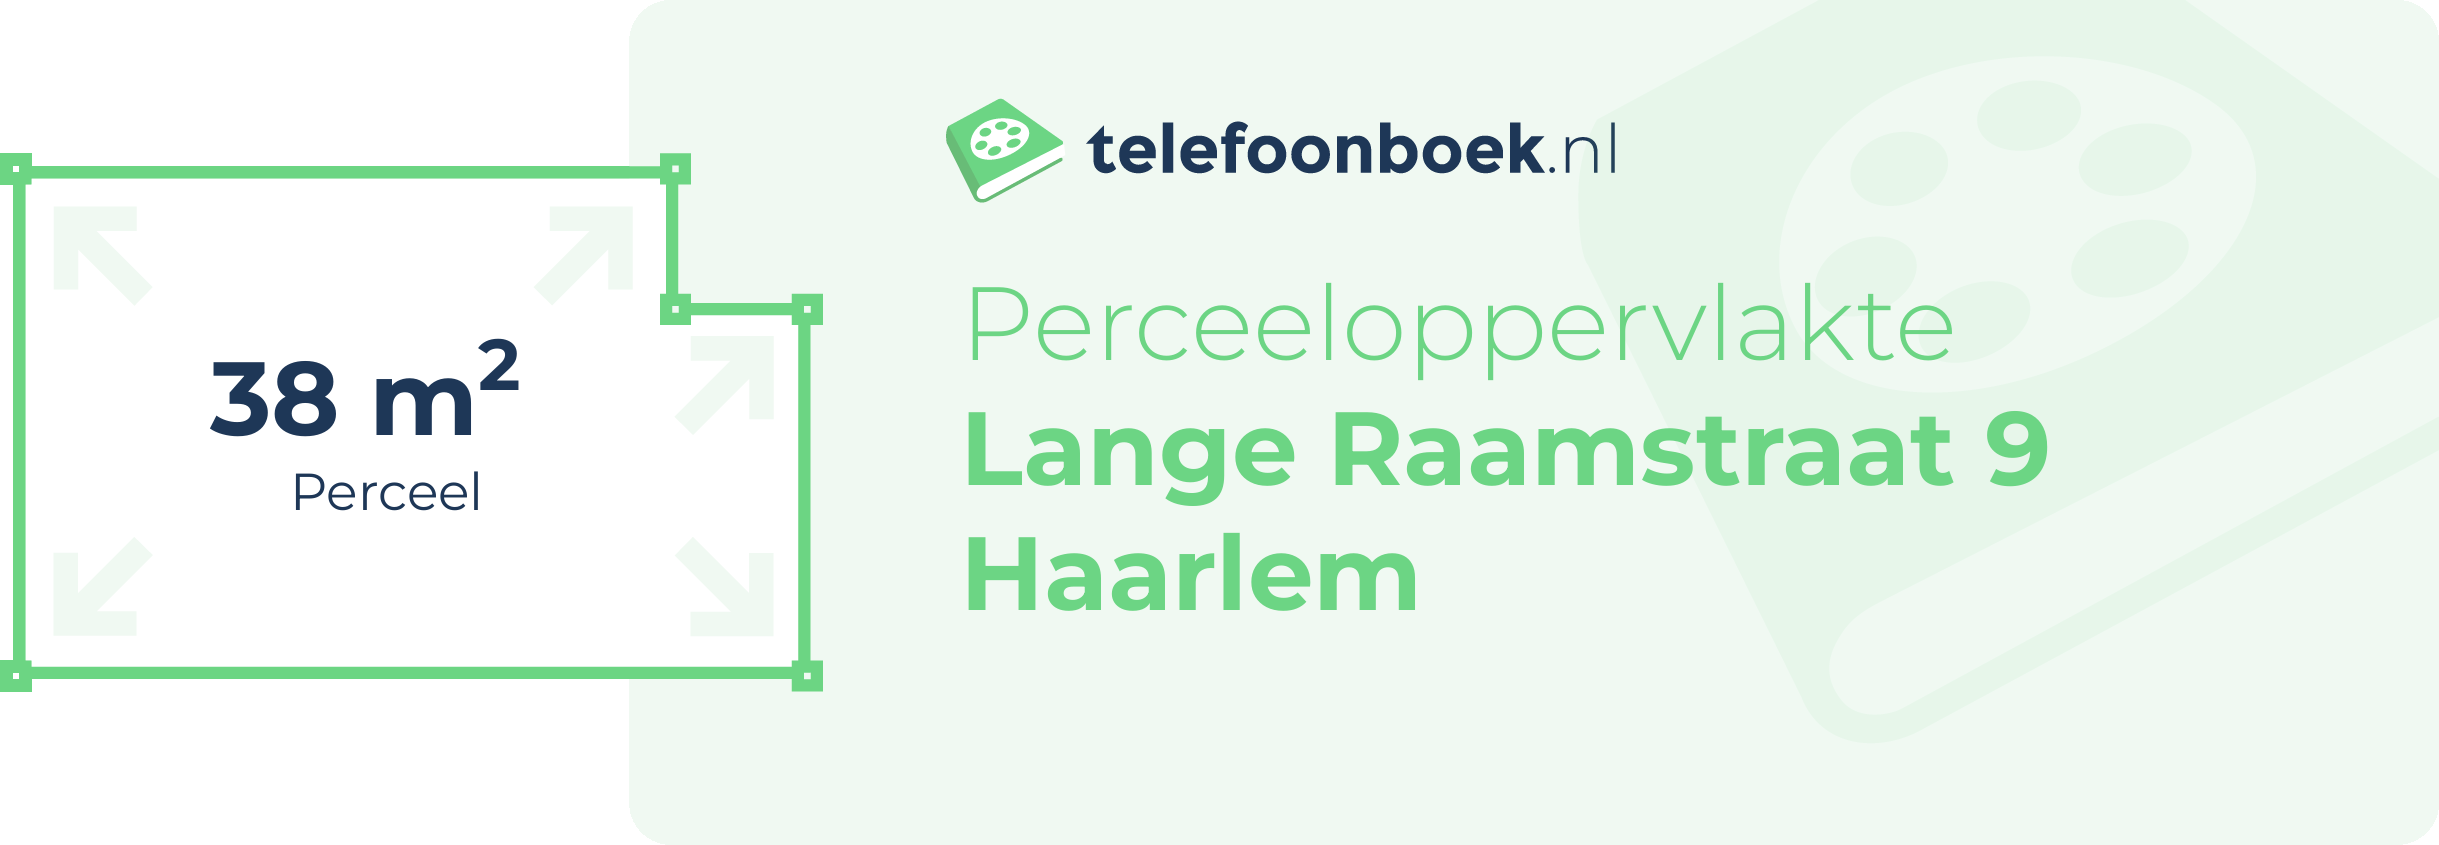 Perceeloppervlakte Lange Raamstraat 9 Haarlem